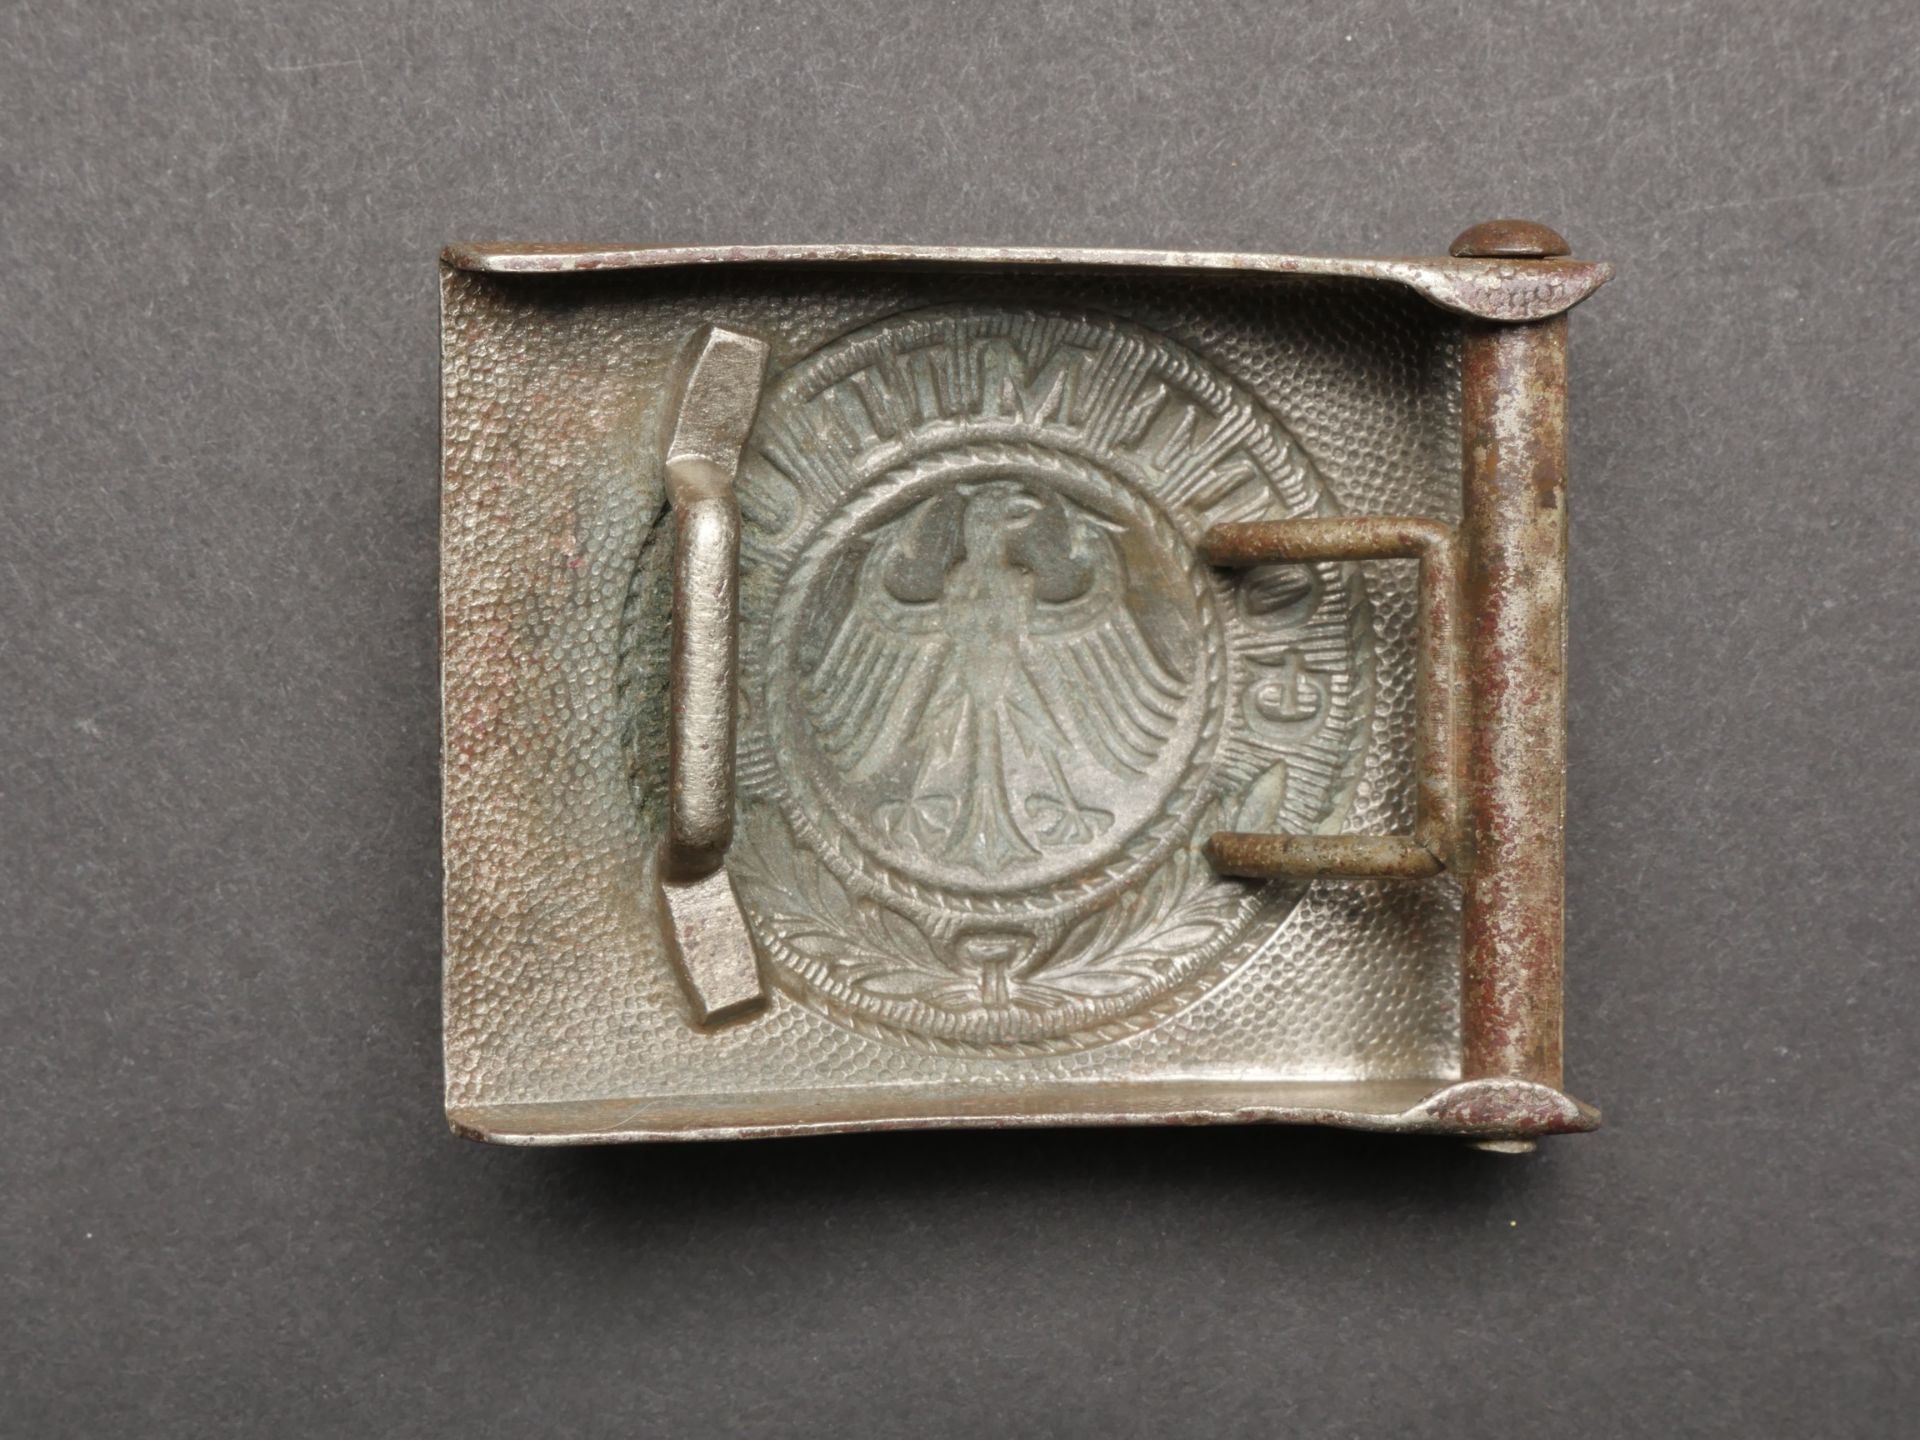 Boucle de ceinturon Reichswehr. Reichswehr belt buckle. - Image 2 of 5